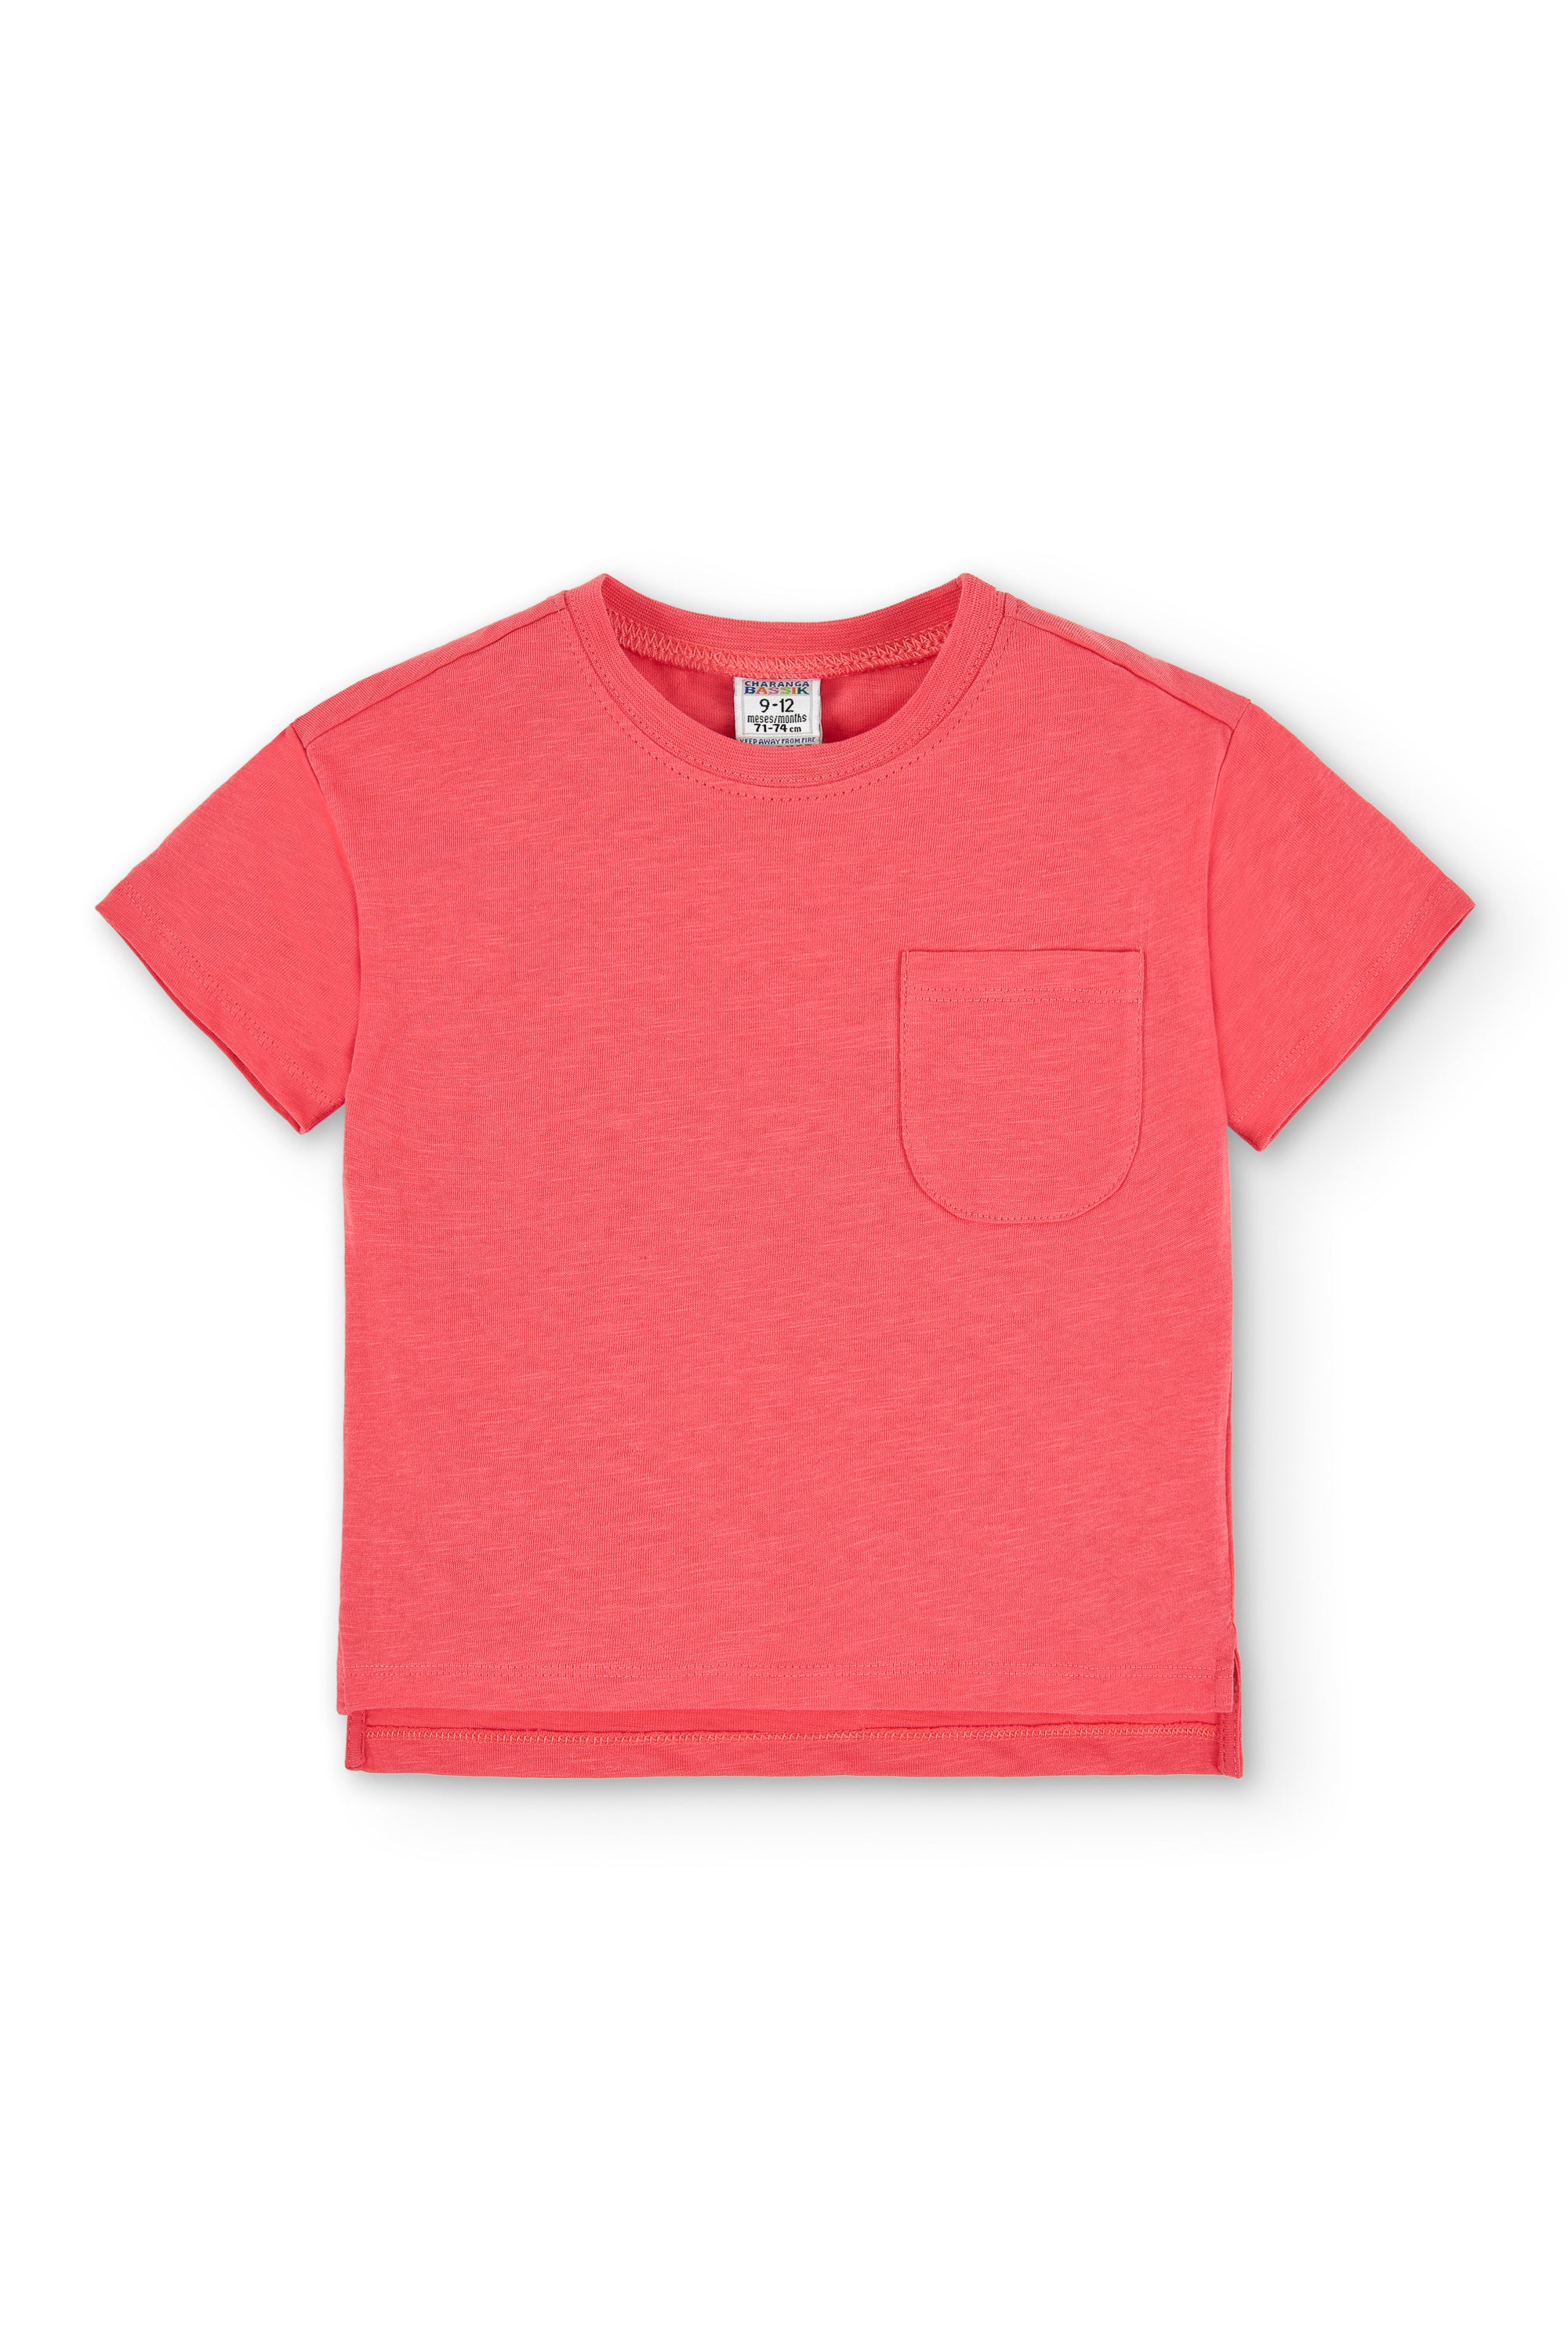 Camiseta de bebé rojo VERANO/Charanga